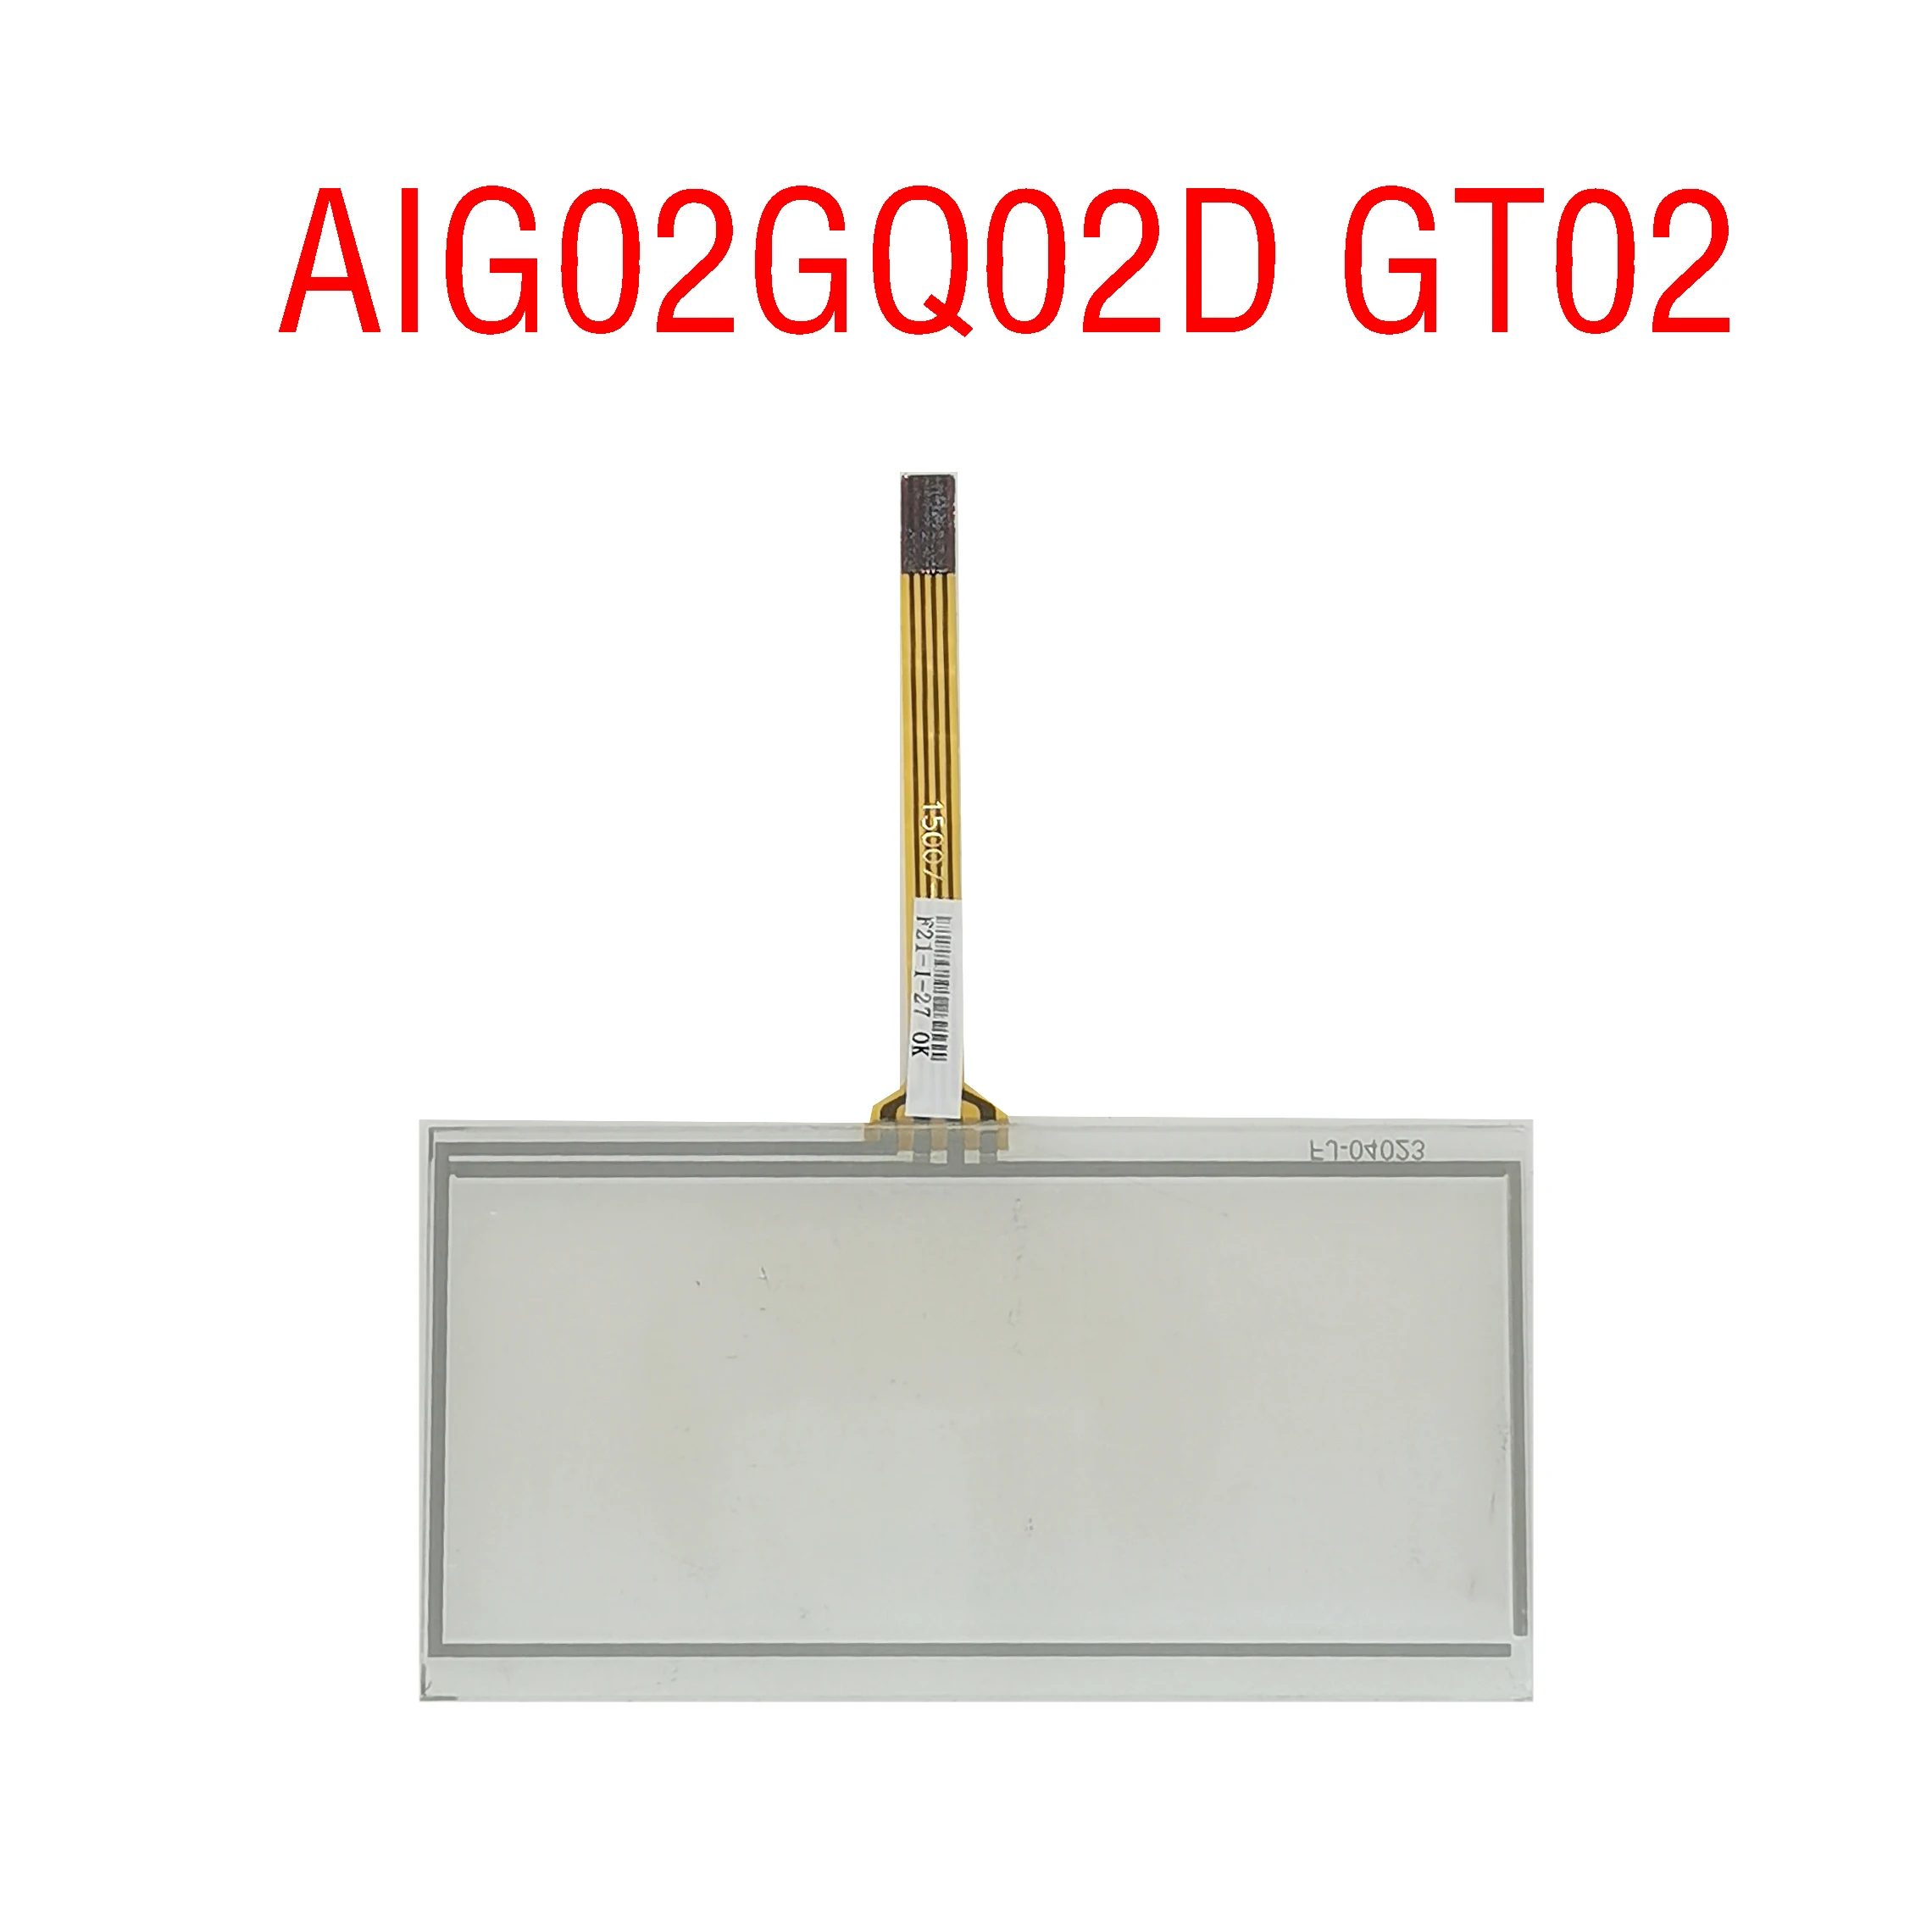 Novi originalni dotik AIG02GQ02D GT02, 1 leto garancije